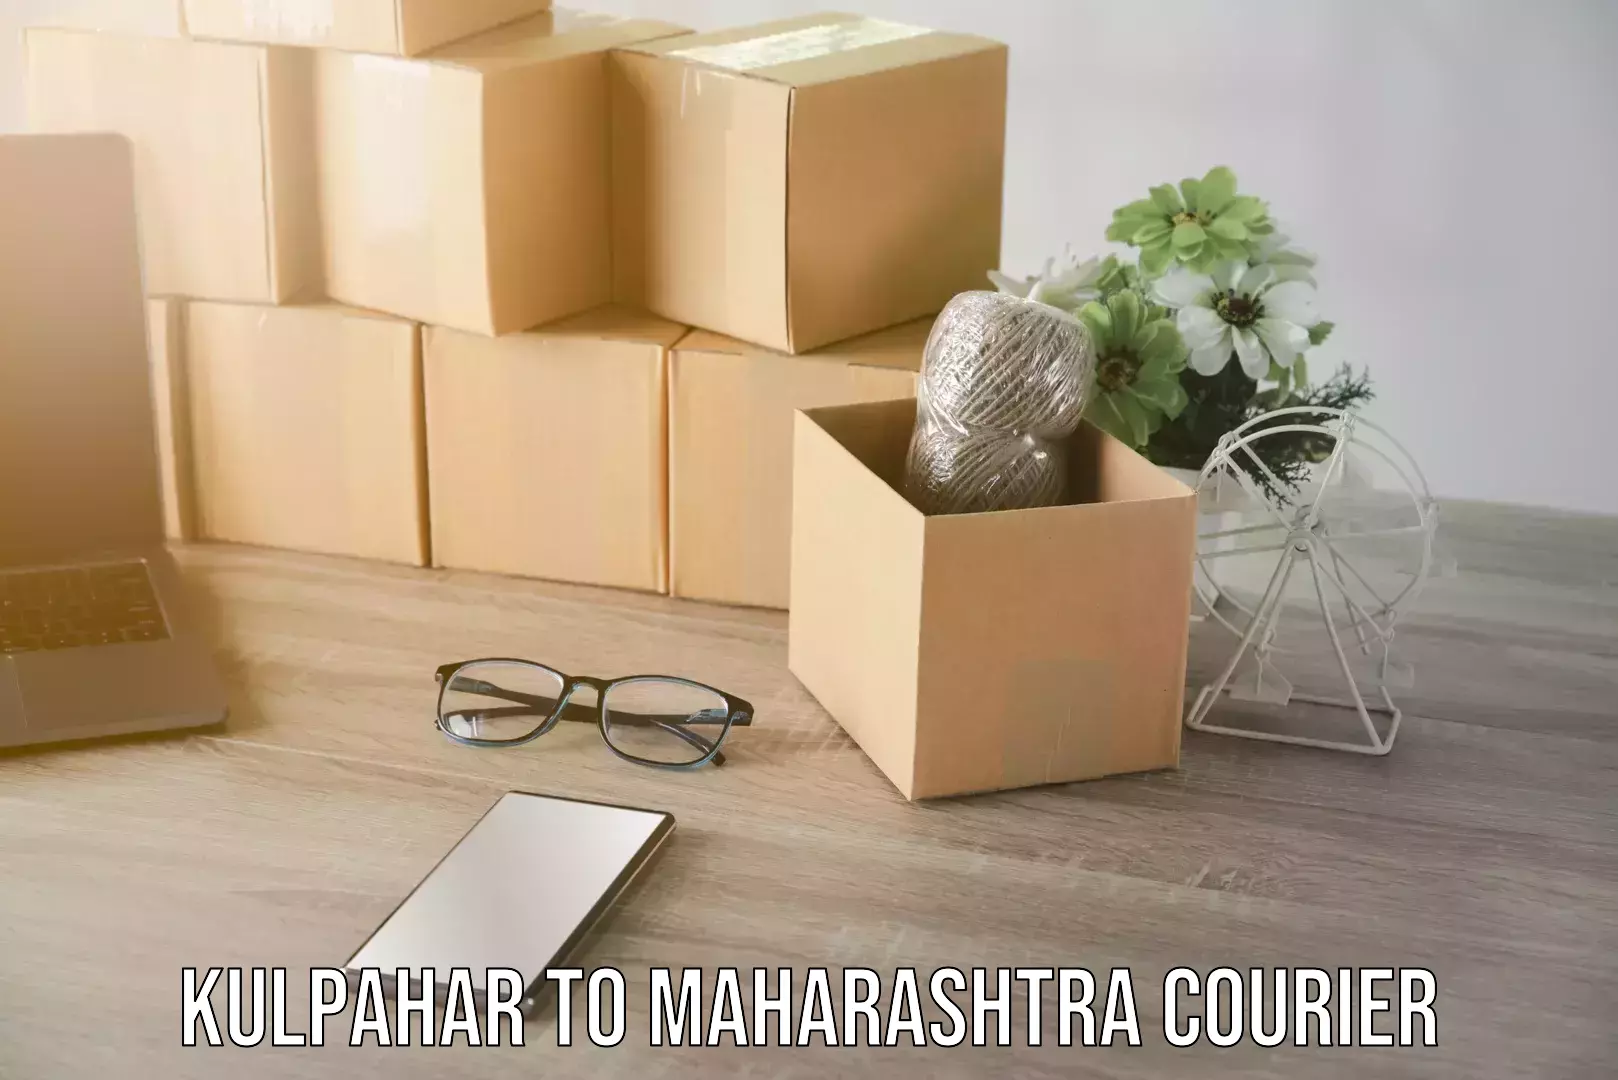 Seamless moving process Kulpahar to Maharashtra